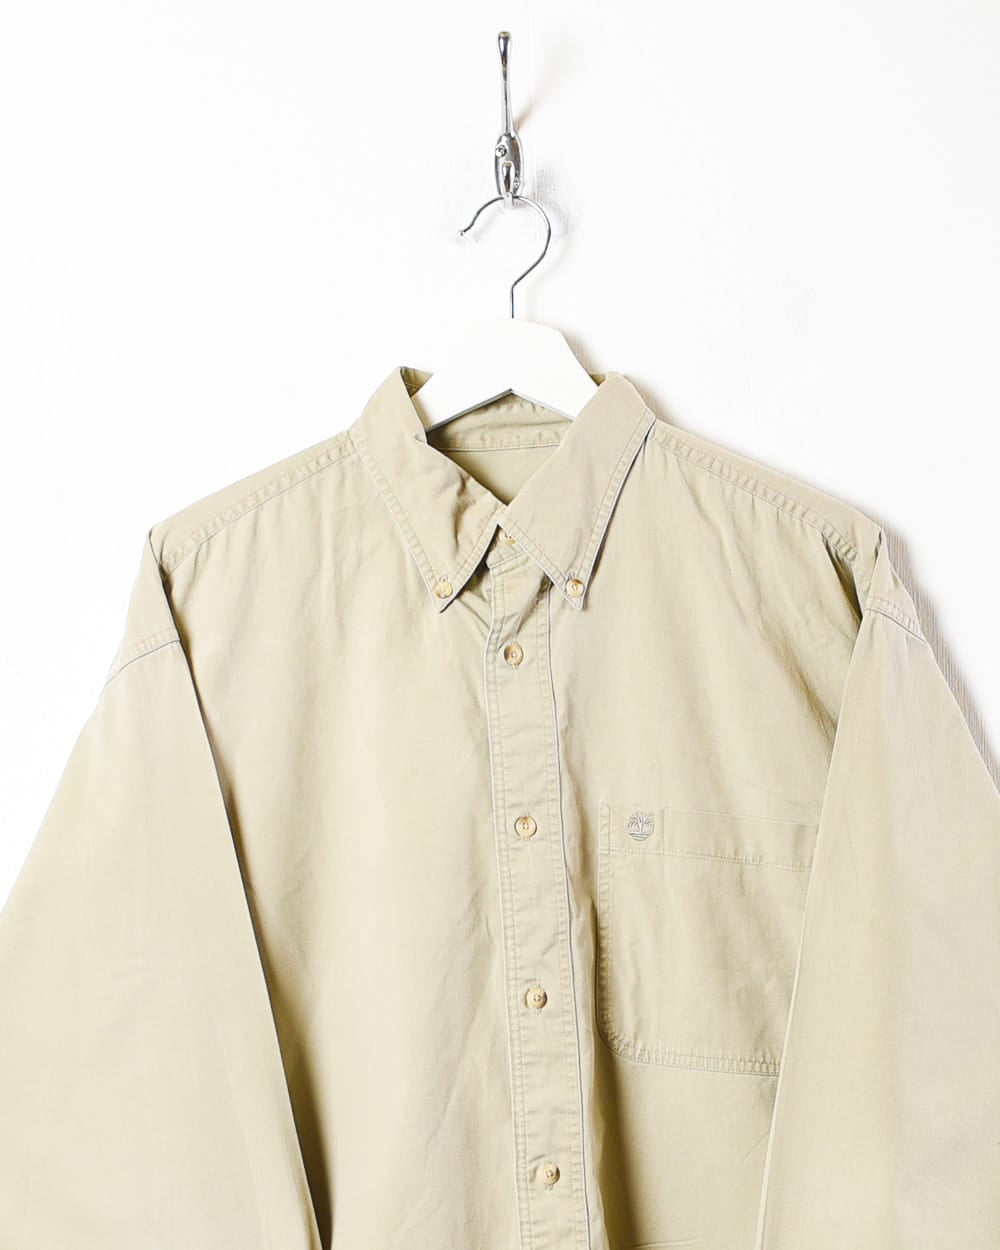 Neutral Timberland Shirt - Medium